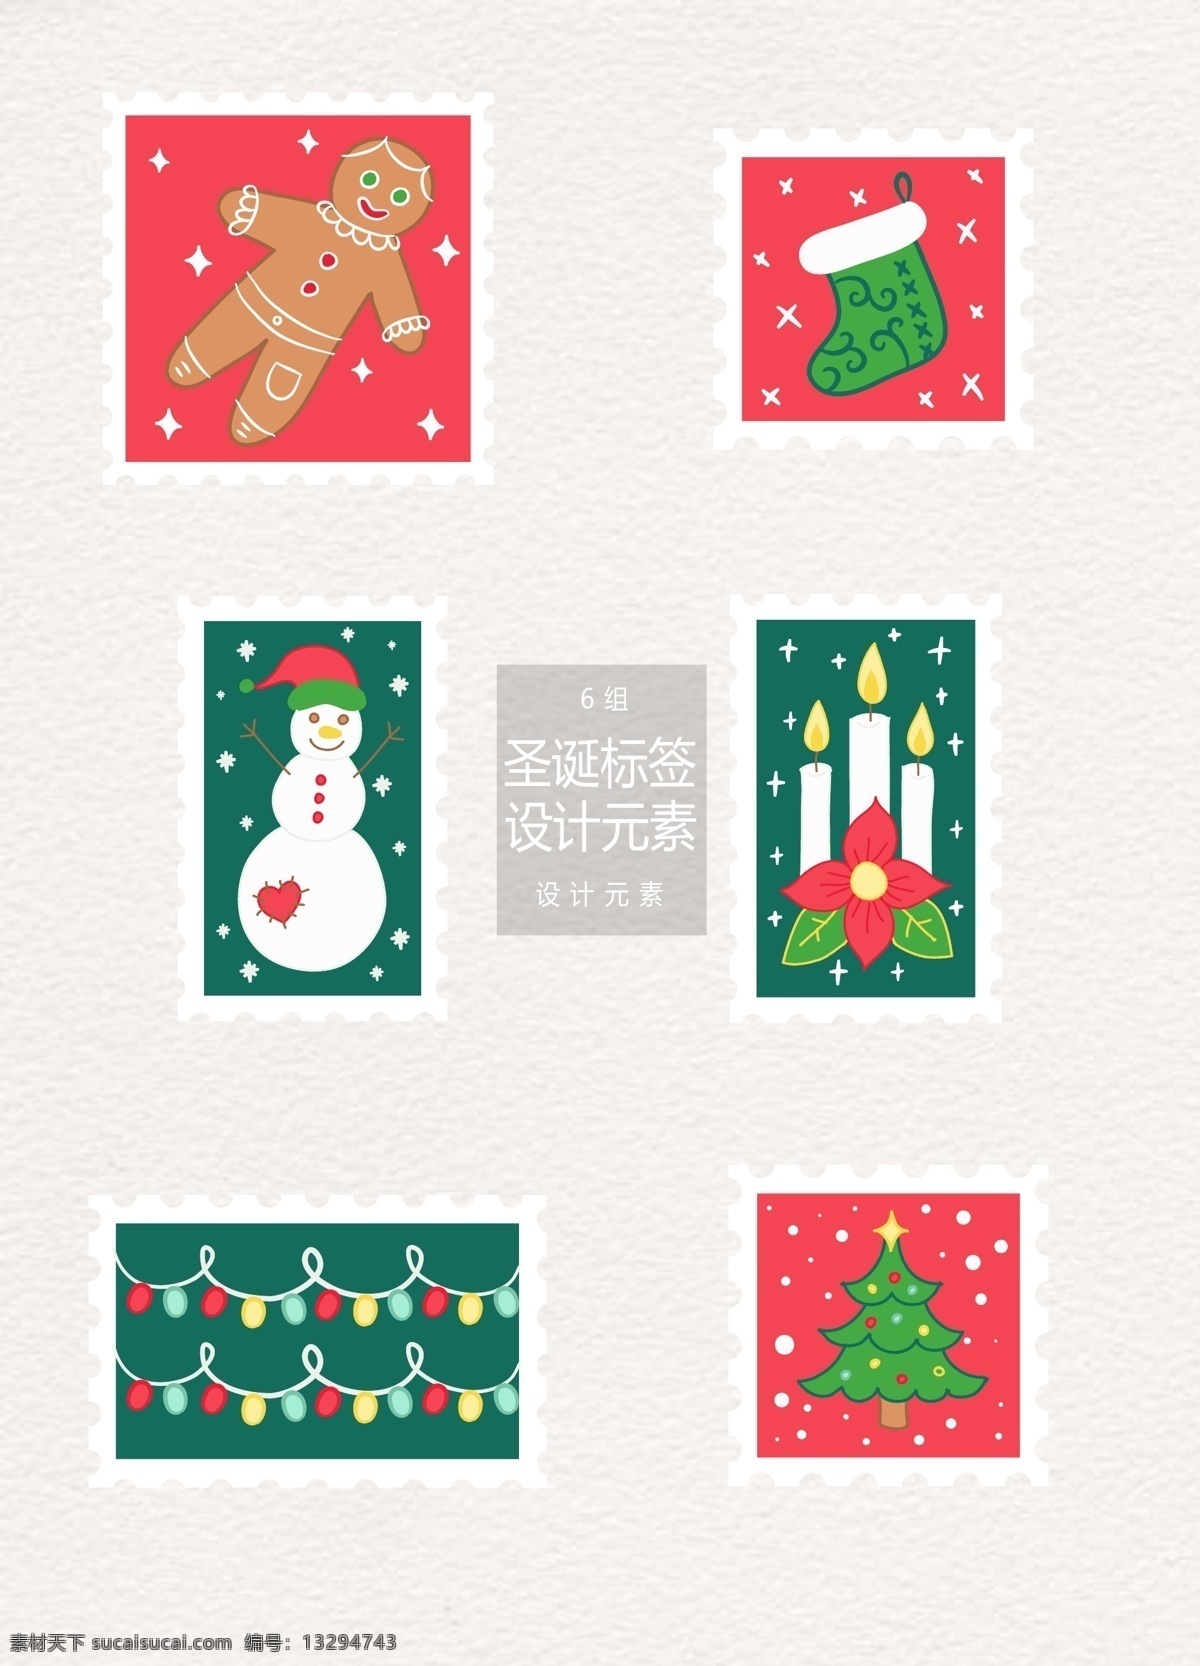 矢量 圣诞节 邮票 标签 元素 设计元素 标签设计 蜡烛 圣诞节元素 圣诞 圣诞邮票 姜饼人 雪人 圣诞袜